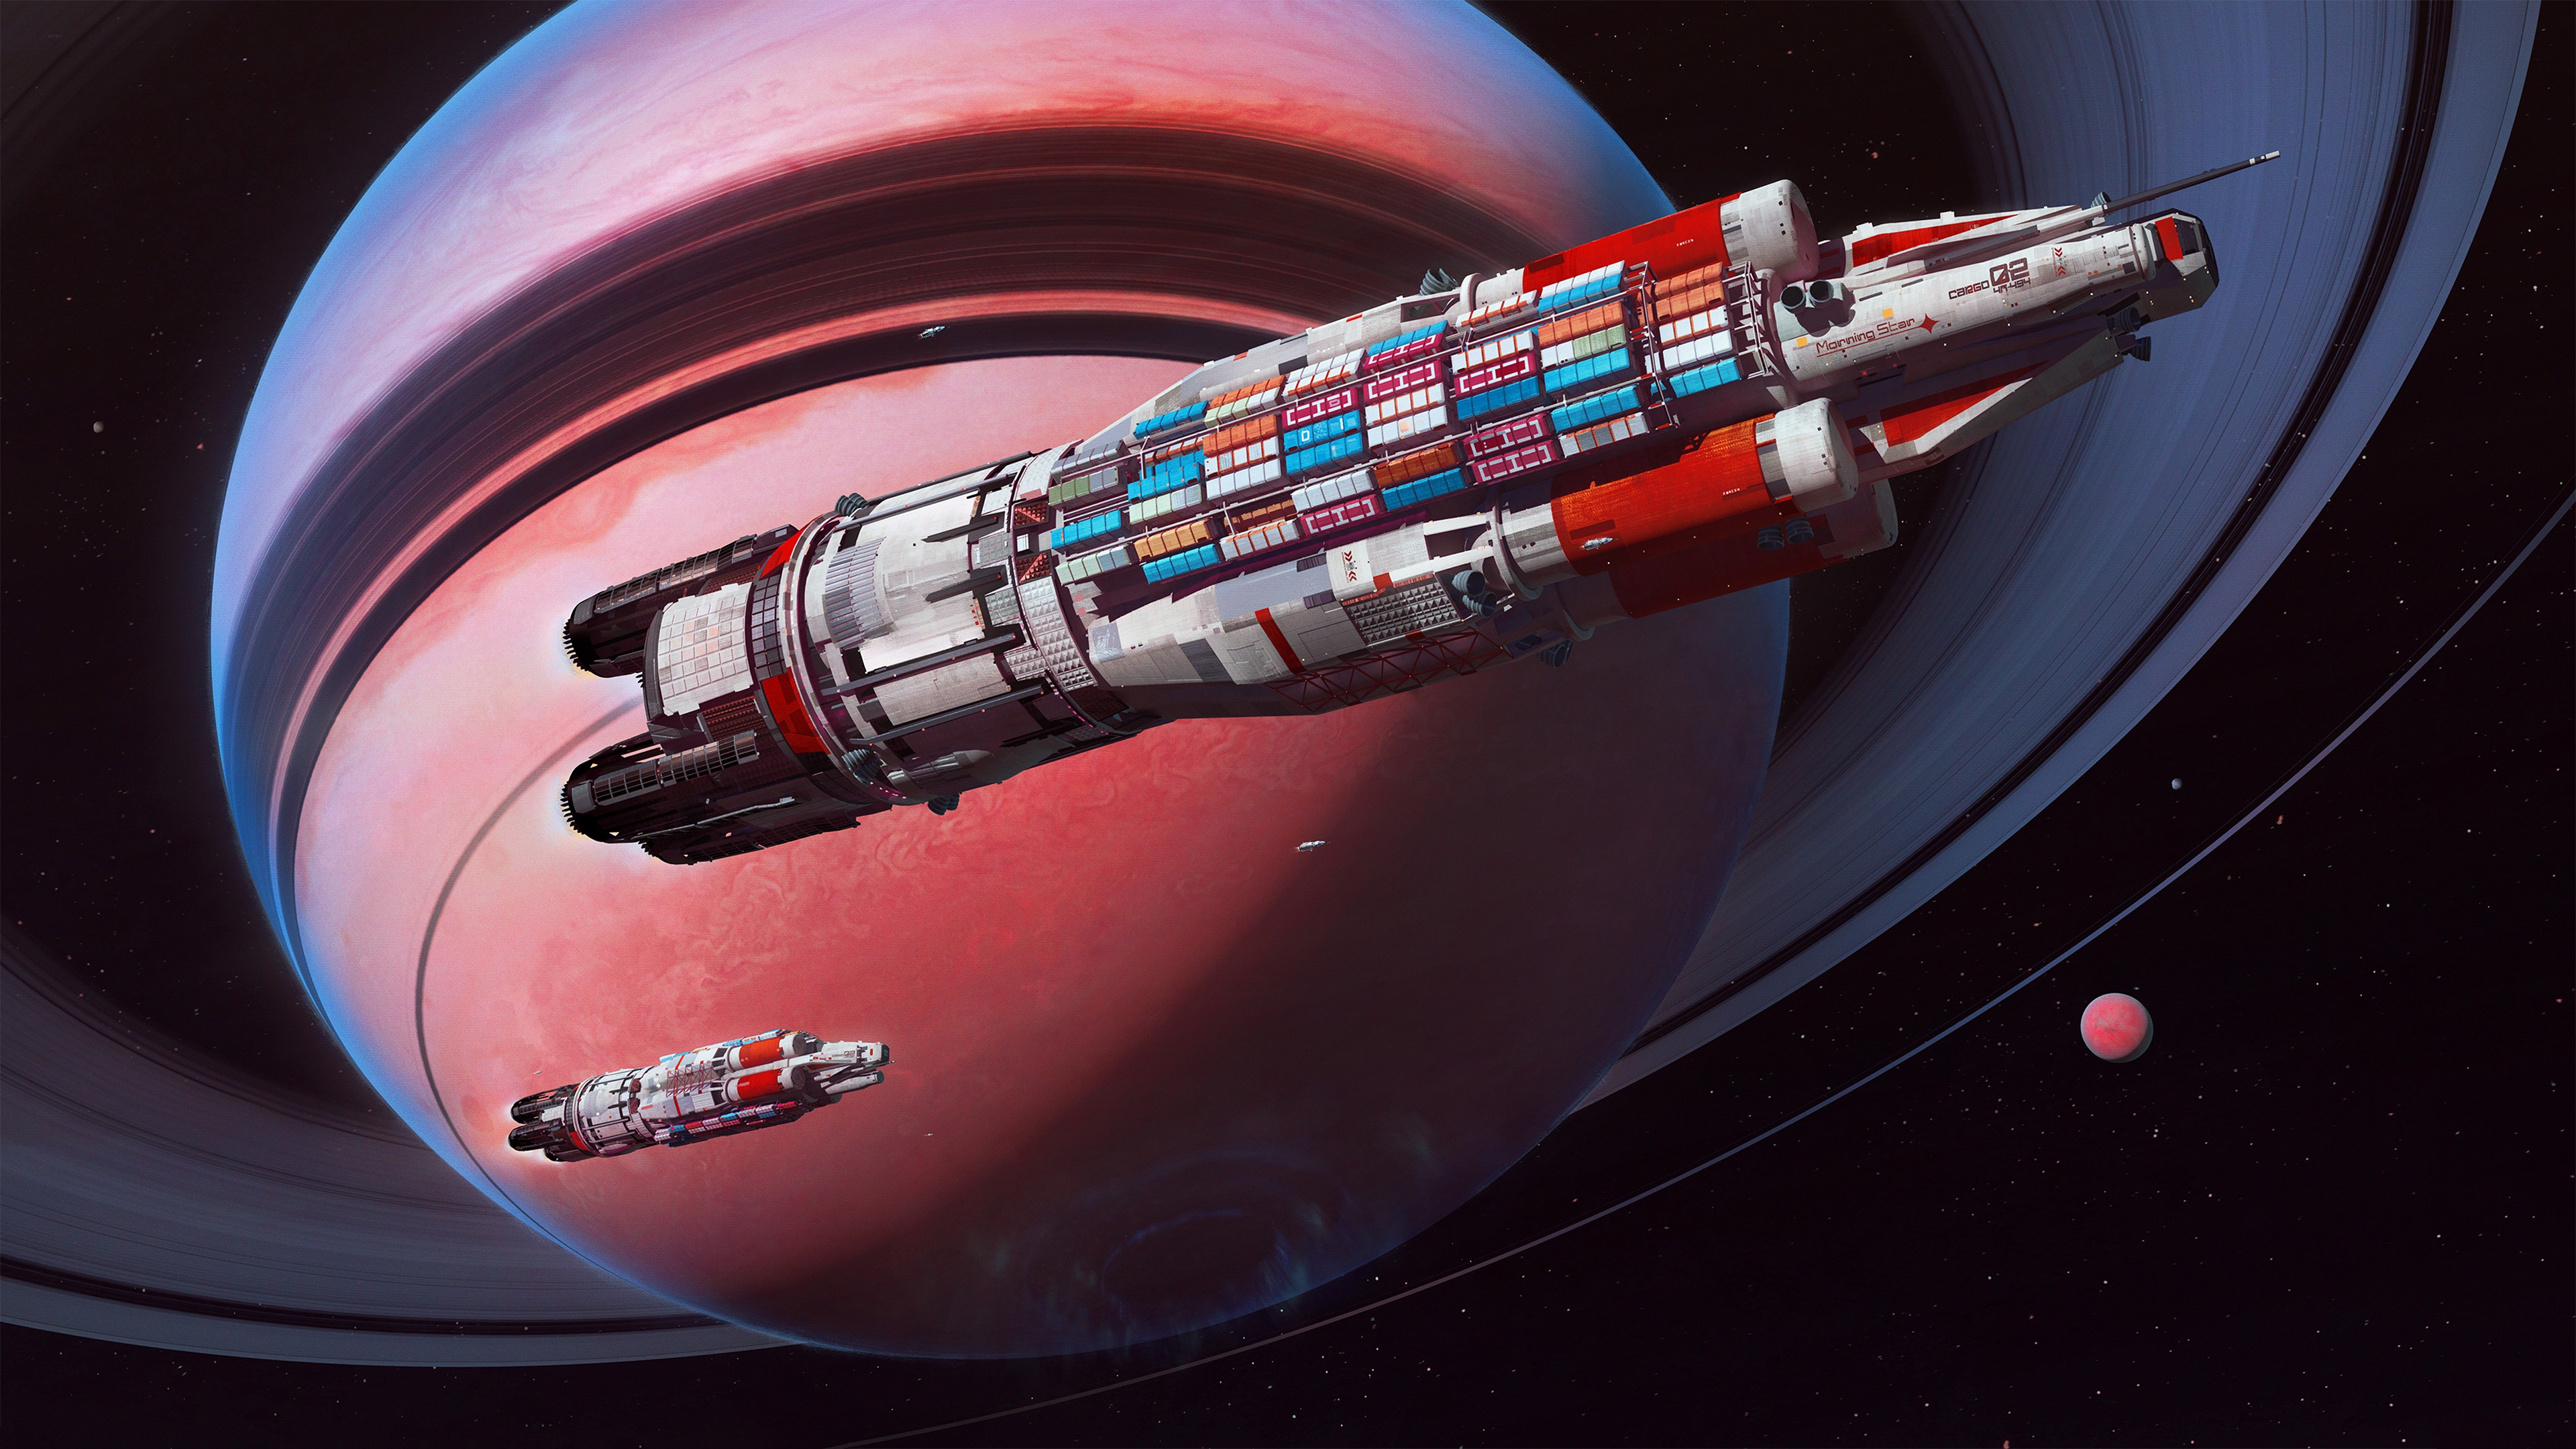 Maciej Rebisz Space Art Spaceship Planet Express Futurism Futuristic Cargo 3840x2160